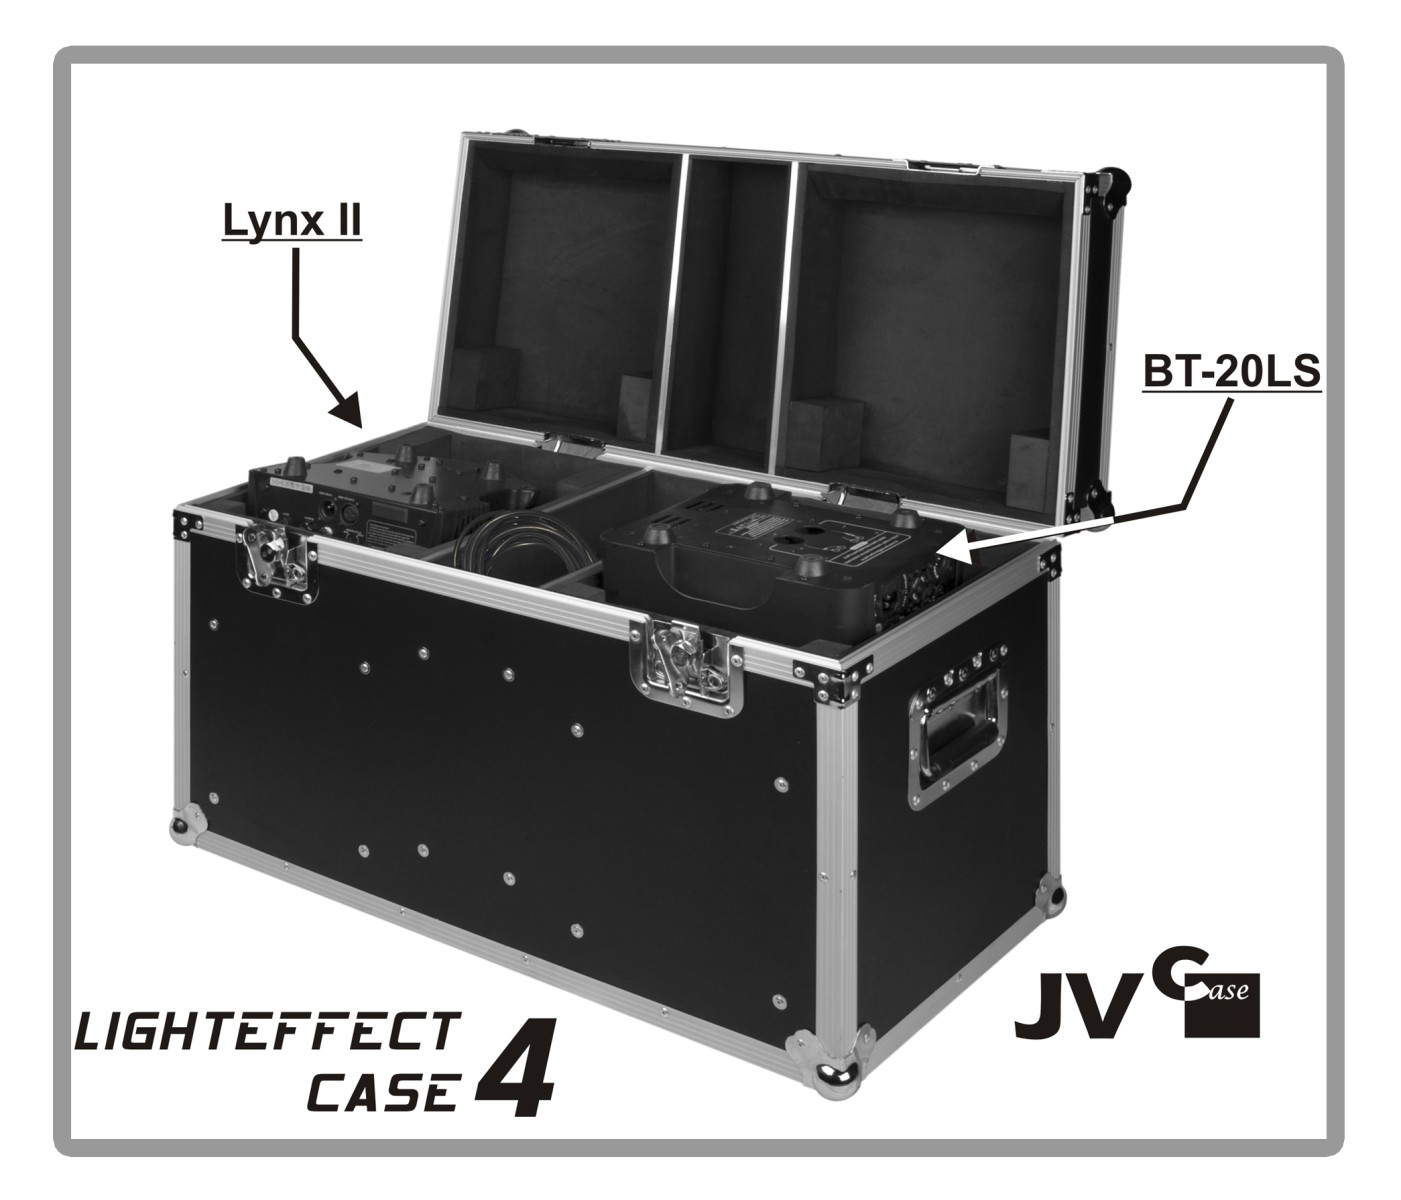 JV Case - Light Effect Case 4